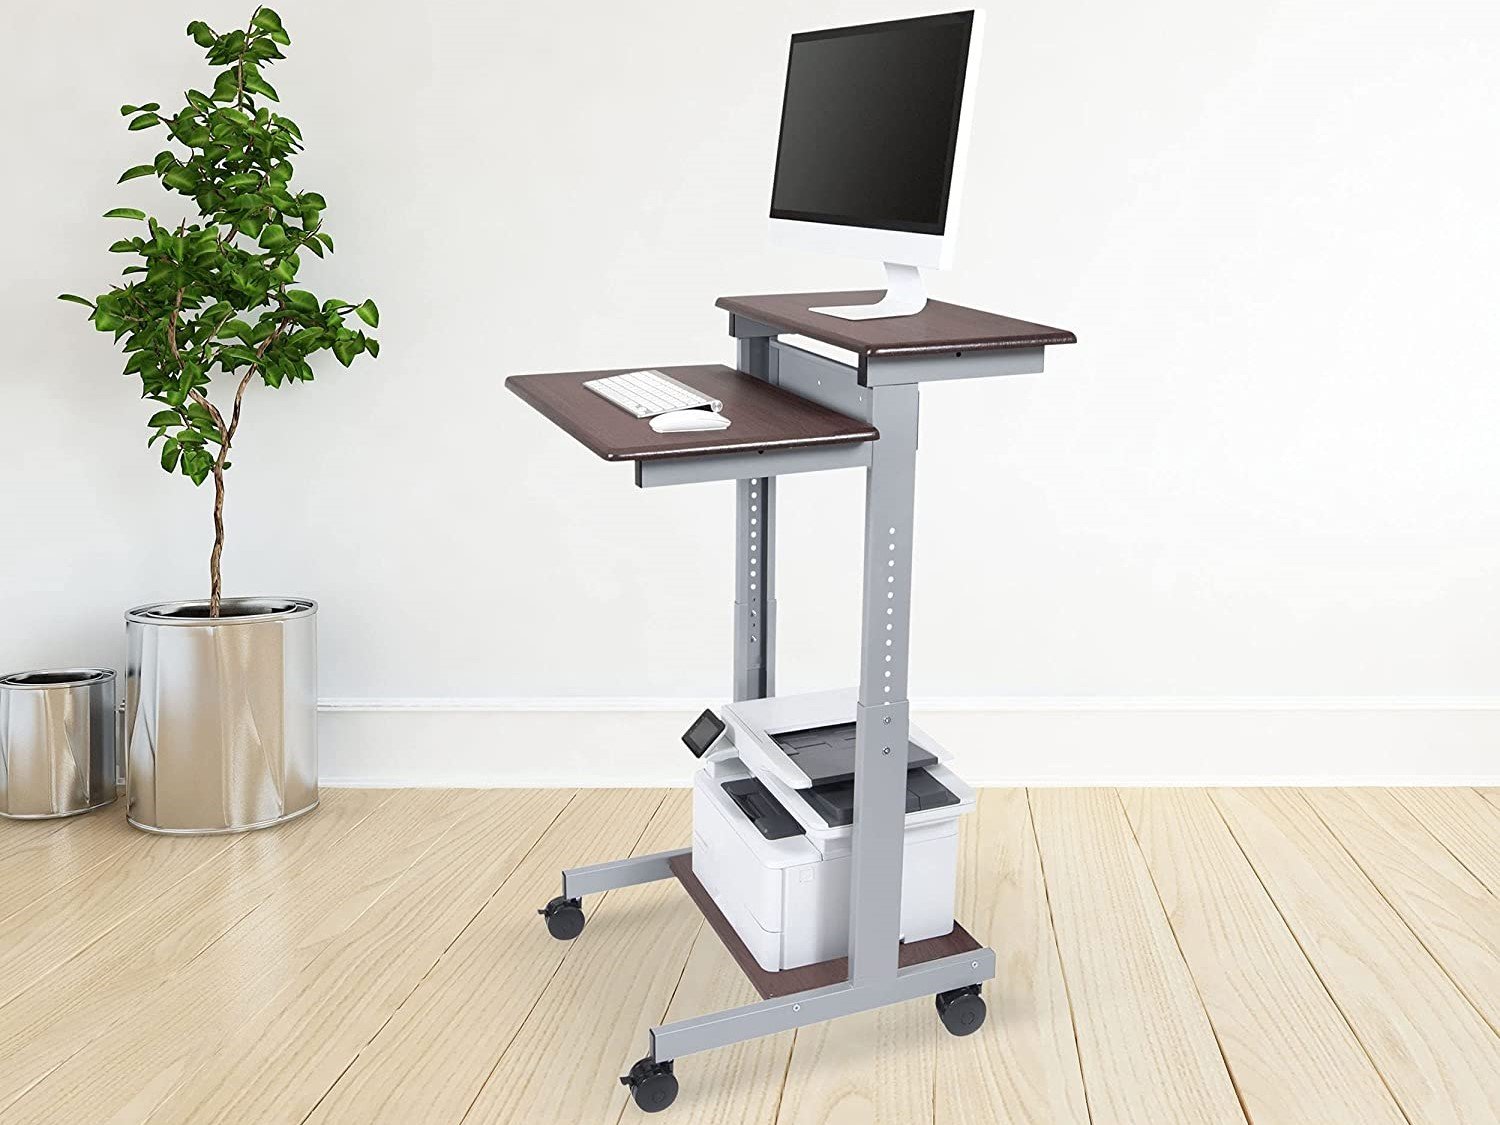 Sstandup Adjustable Desk Lifestyle